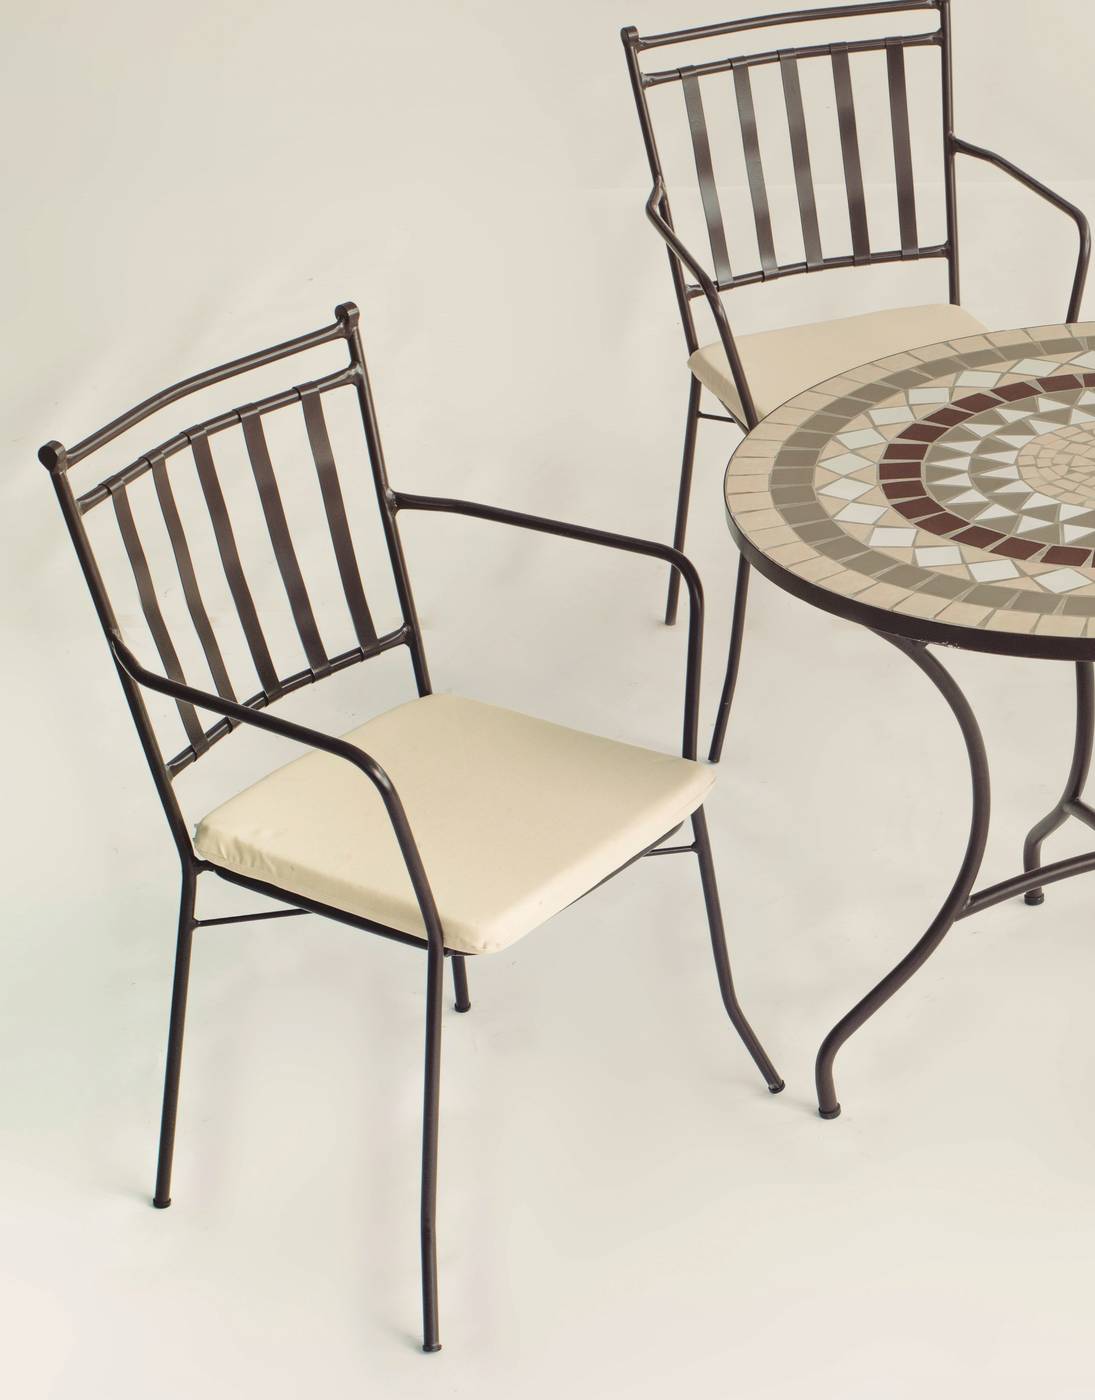 Conjunto Mosaico Estela90-Shifa - Conjunto de forja color bronce: mesa con tablero mosaico de 90 cm + 4 sillones con cojines asiento.